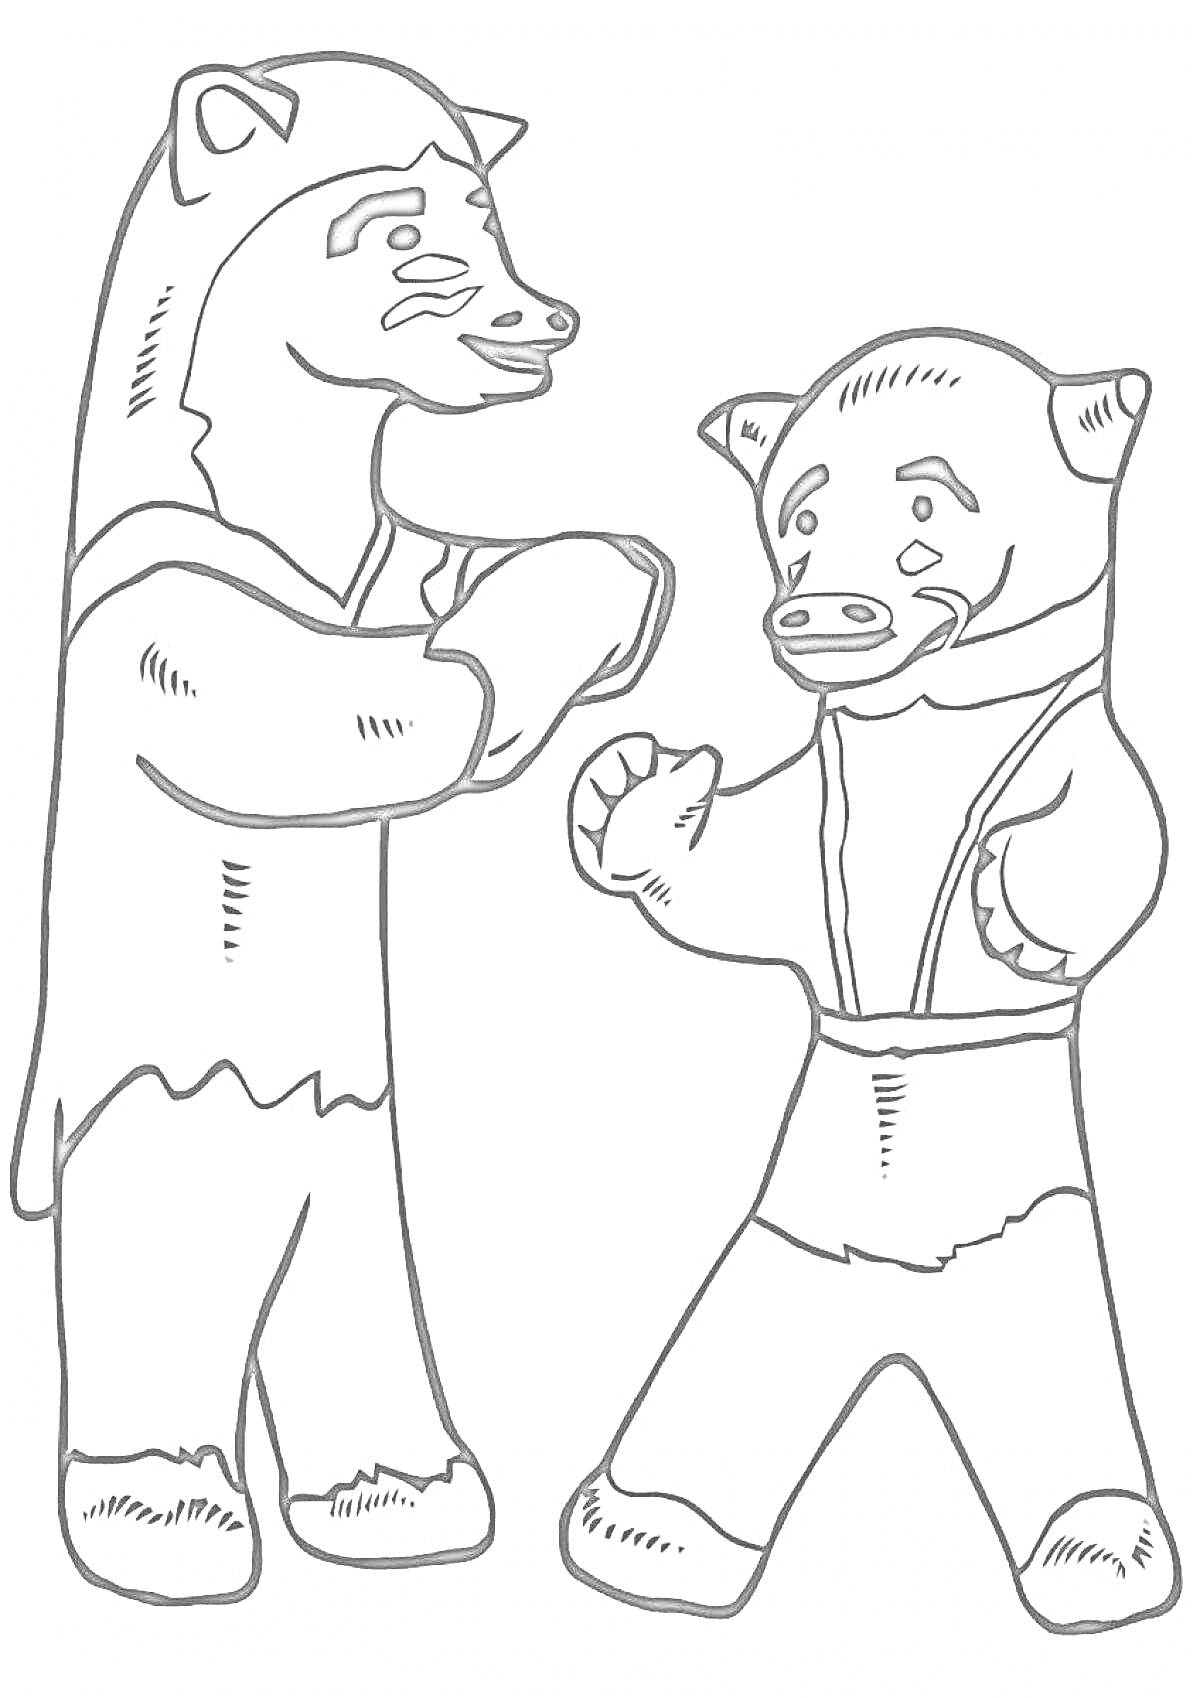 Раскраска Раскраска с изображением двух каргопольских игрушечных медведей, один поднял лапы, другой держит лапы перед собой